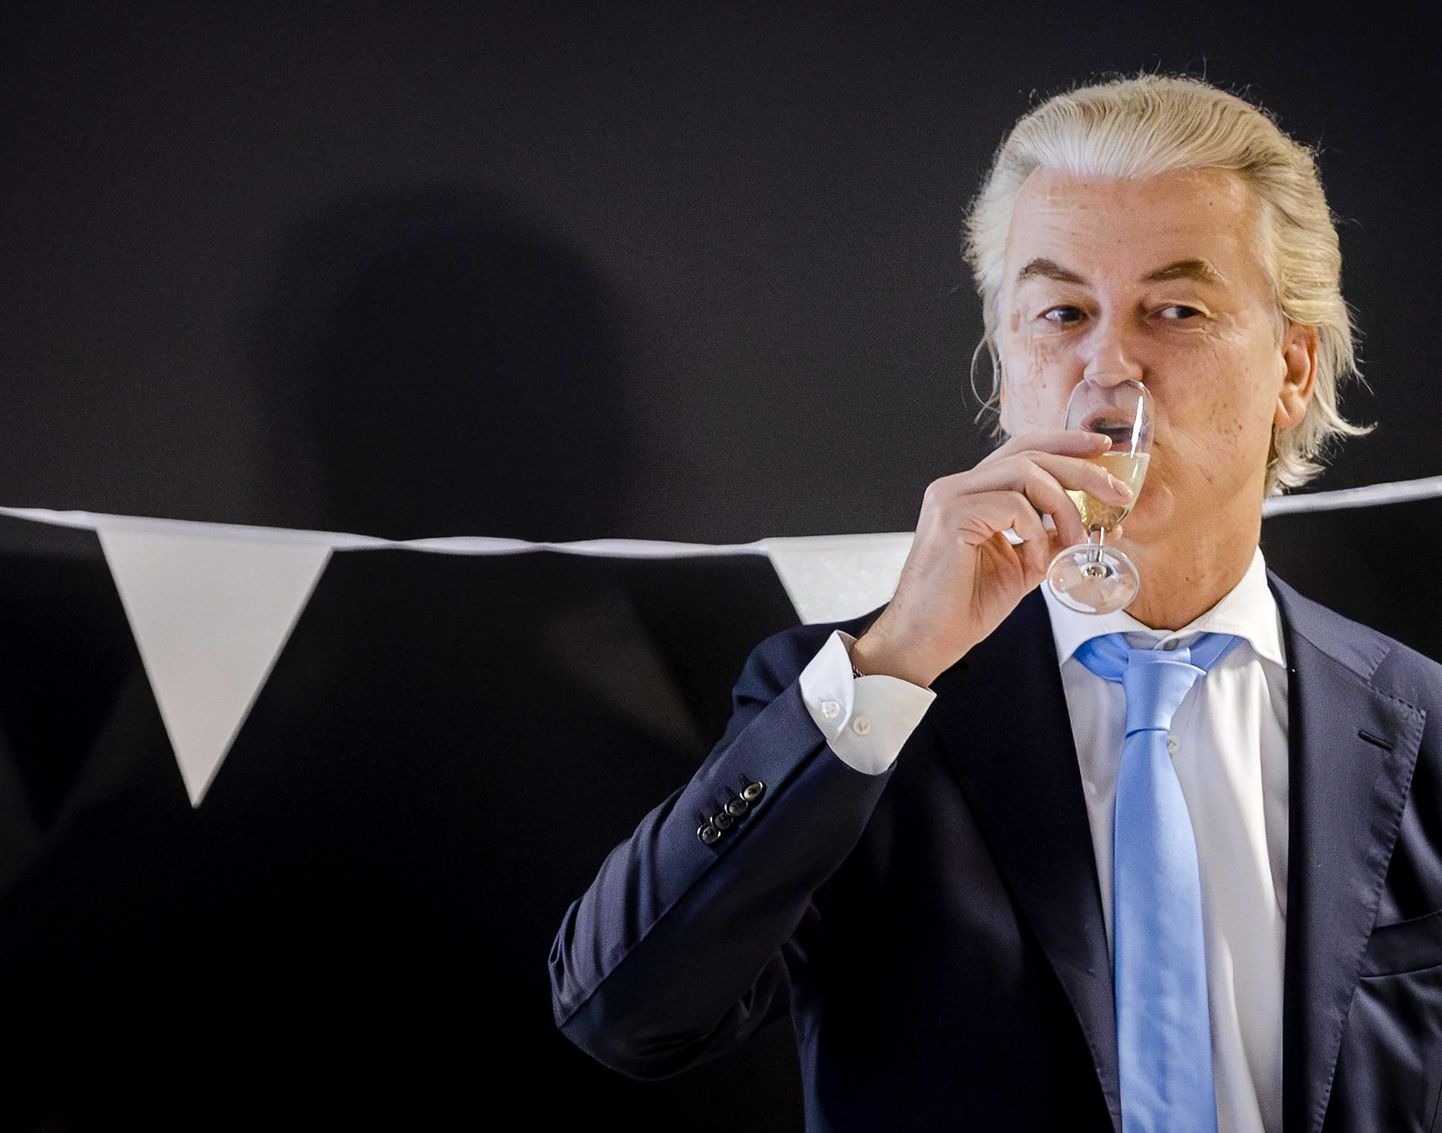 Parempopulistliku Vabaduspartei esimees Geert Wilders tähistas endalegi üllatuseks ülekaalukat valimisvõitu erakorralistel valimistel. 